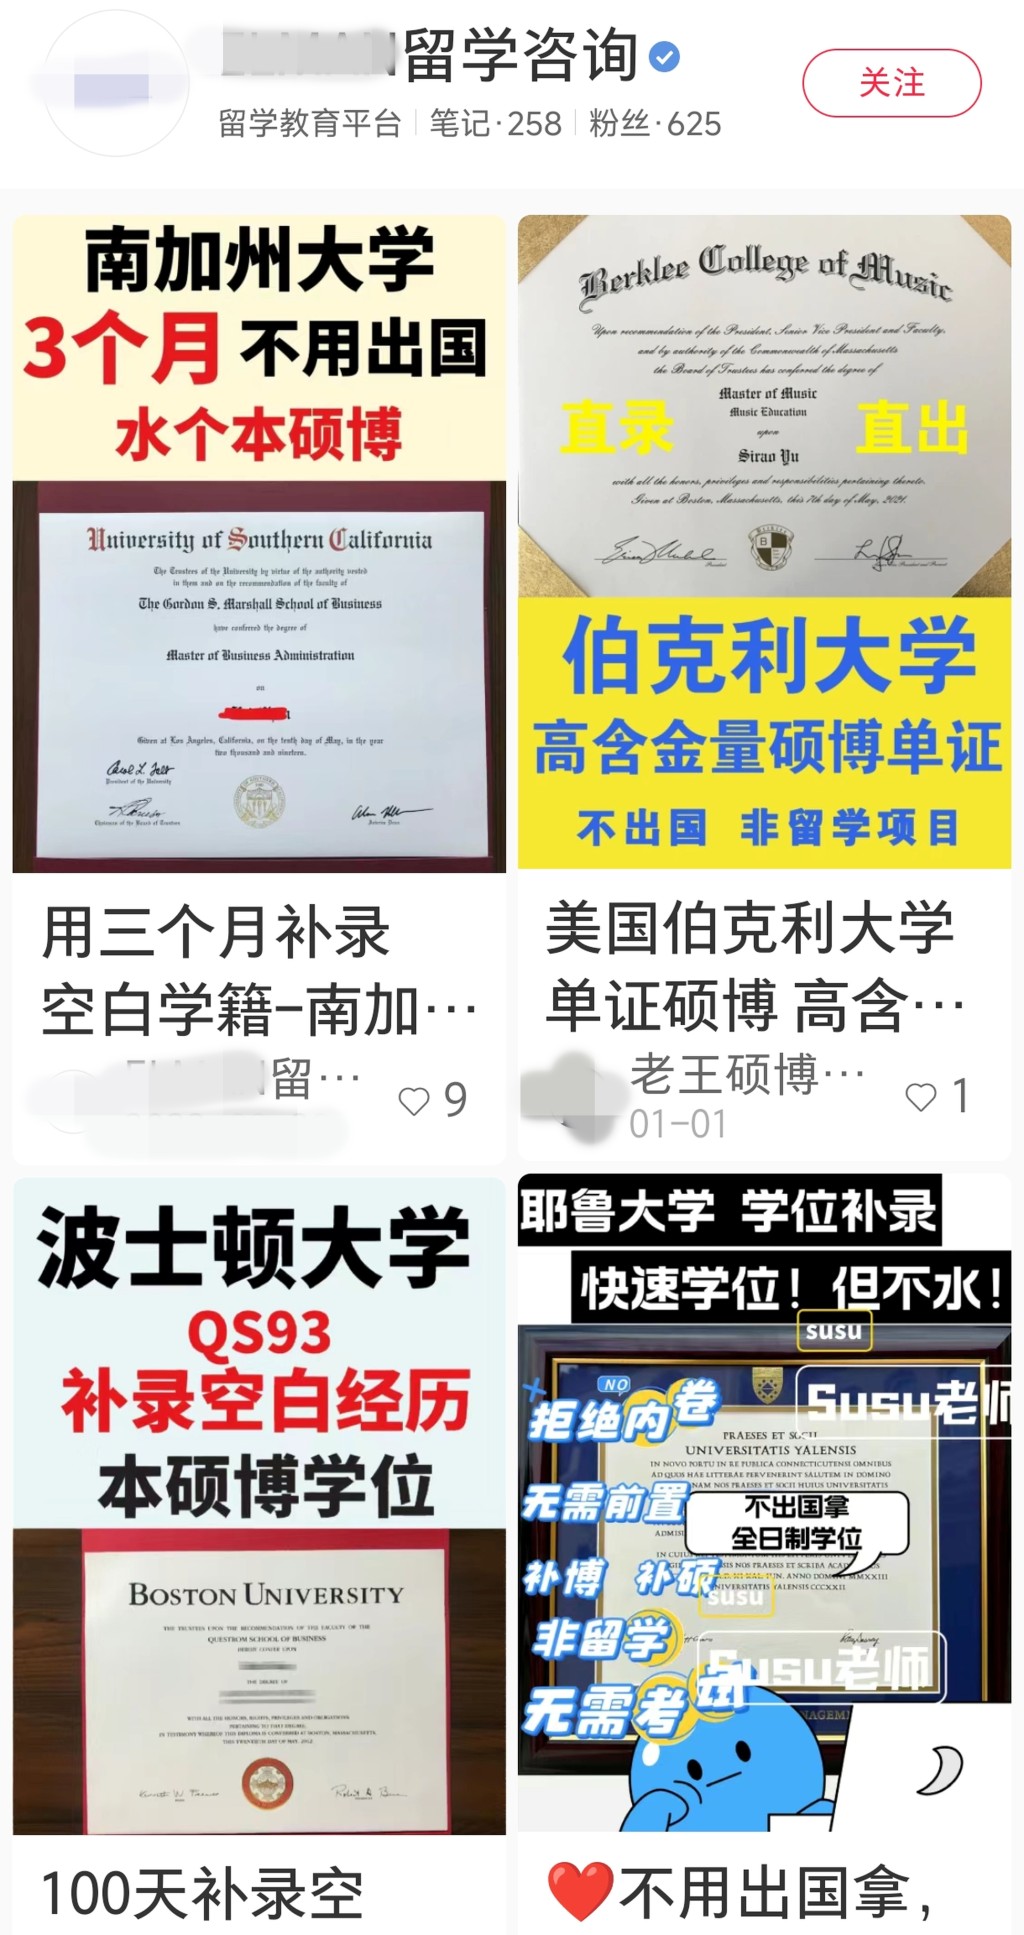 社交媒体“小红书”可见多个声称提供“学籍补录”的贴文，可协助客人直接取得外国名牌大学的学位。 网上图片